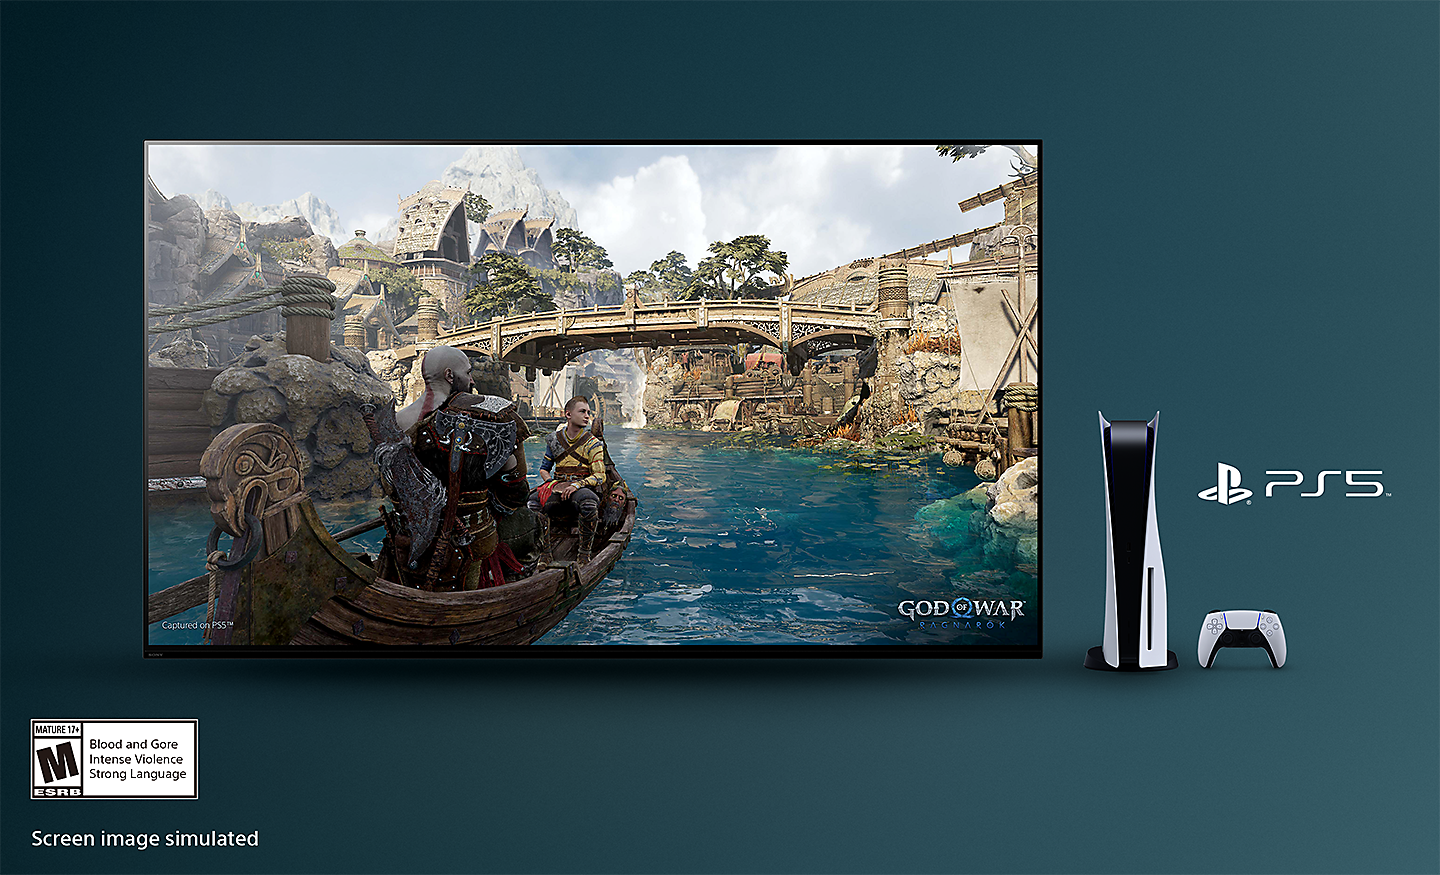 Televisión BRAVIA con captura de pantalla de God of War: Ragnarok muestra un barco en un río y un puente de fondo con la consola PS5™, el controlador y el logotipo de PS5™ a la derecha de la televisión, y el logotipo de clasificación ESRB para mayores de 17 años abajo a la izquierda